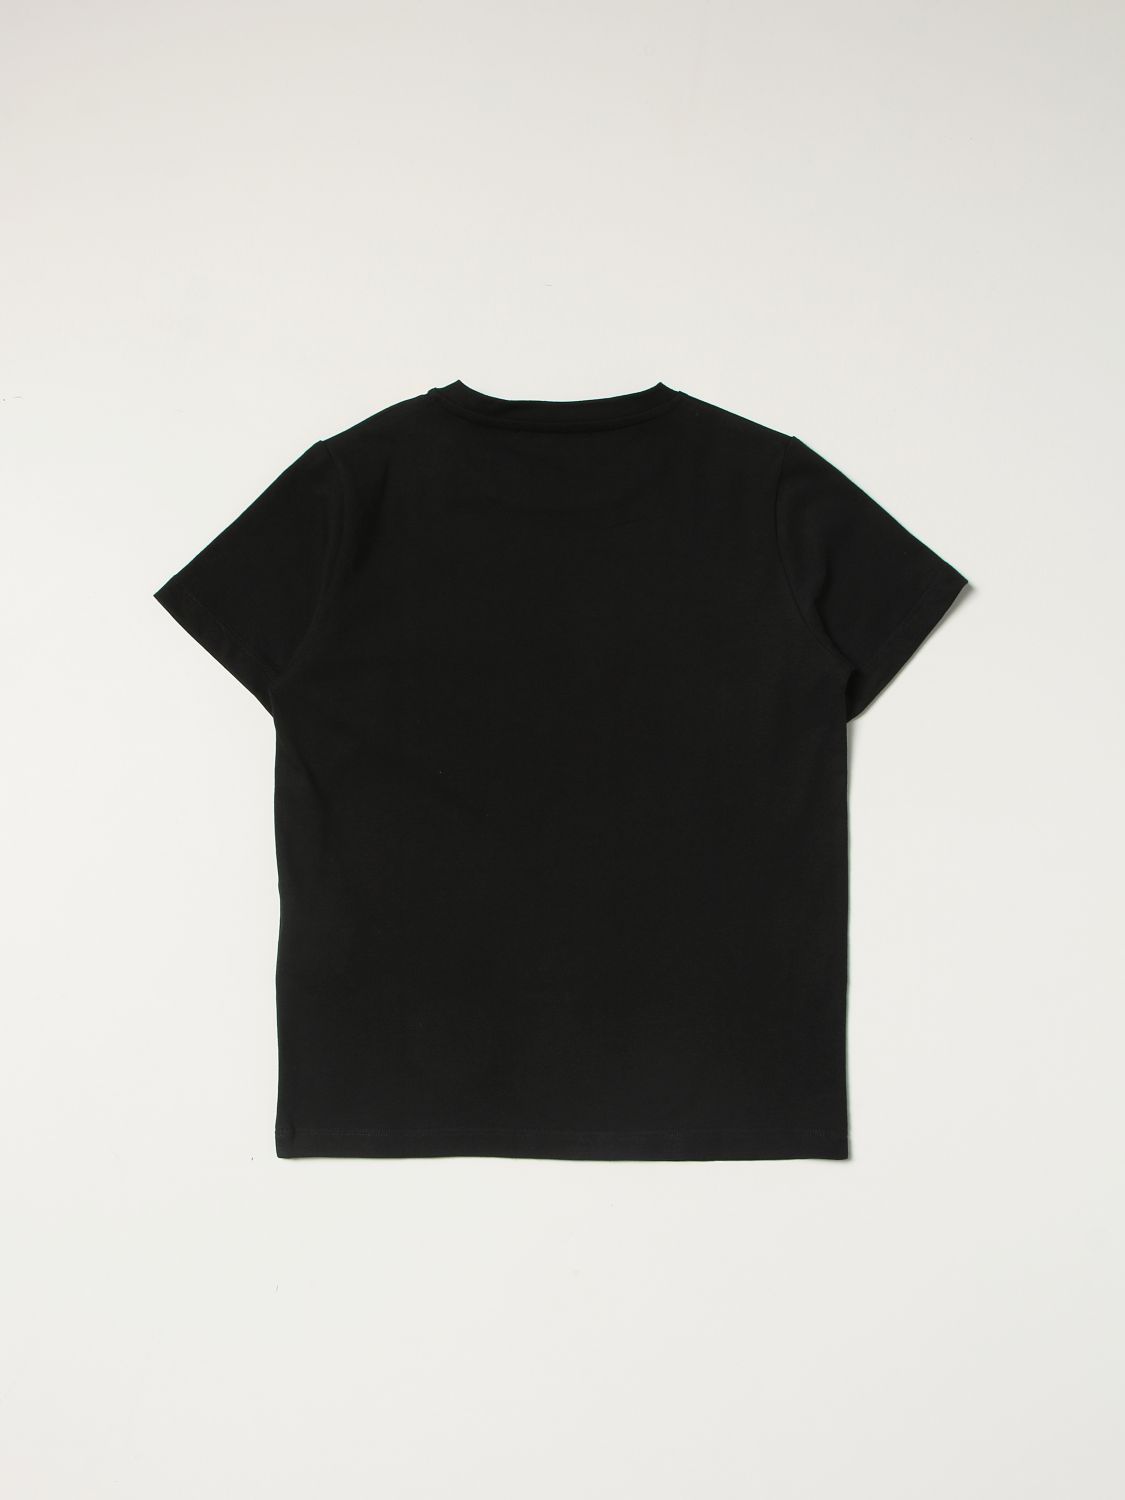 T-Shirt Young Versace: Young Versace Jungen t-shirt schwarz 2